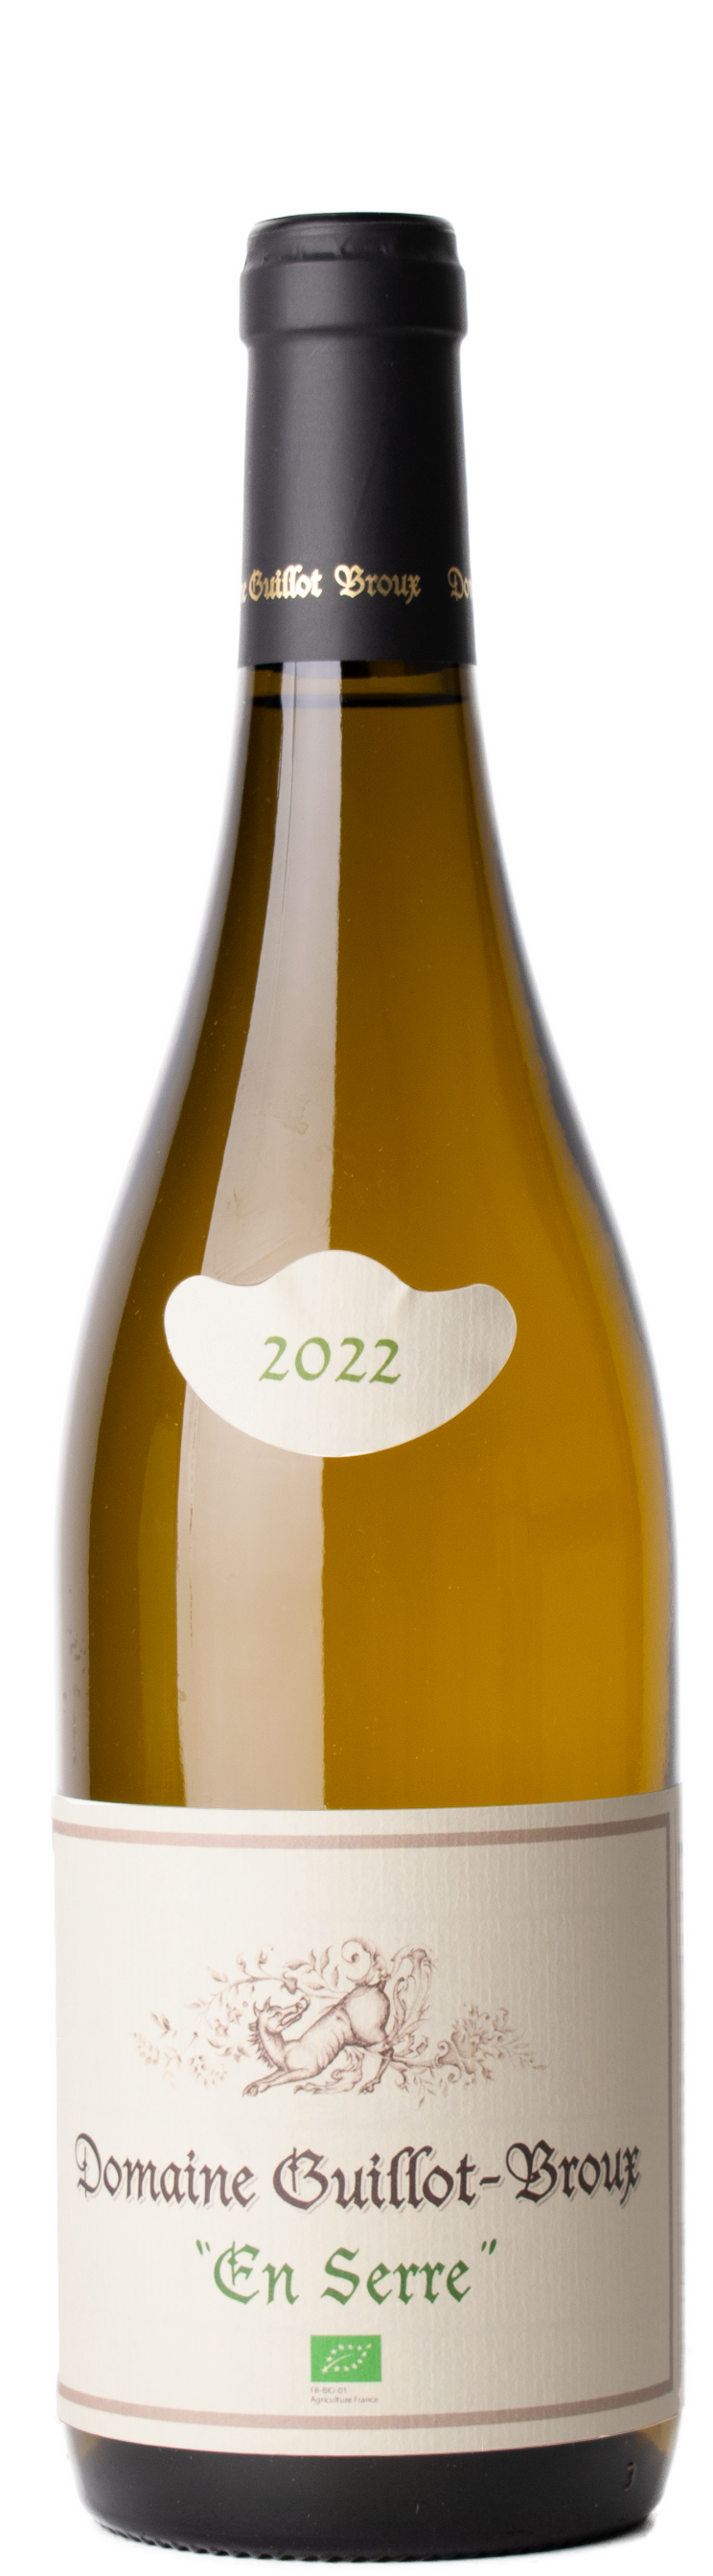 Mâcon Chardonnay En Serre 2022